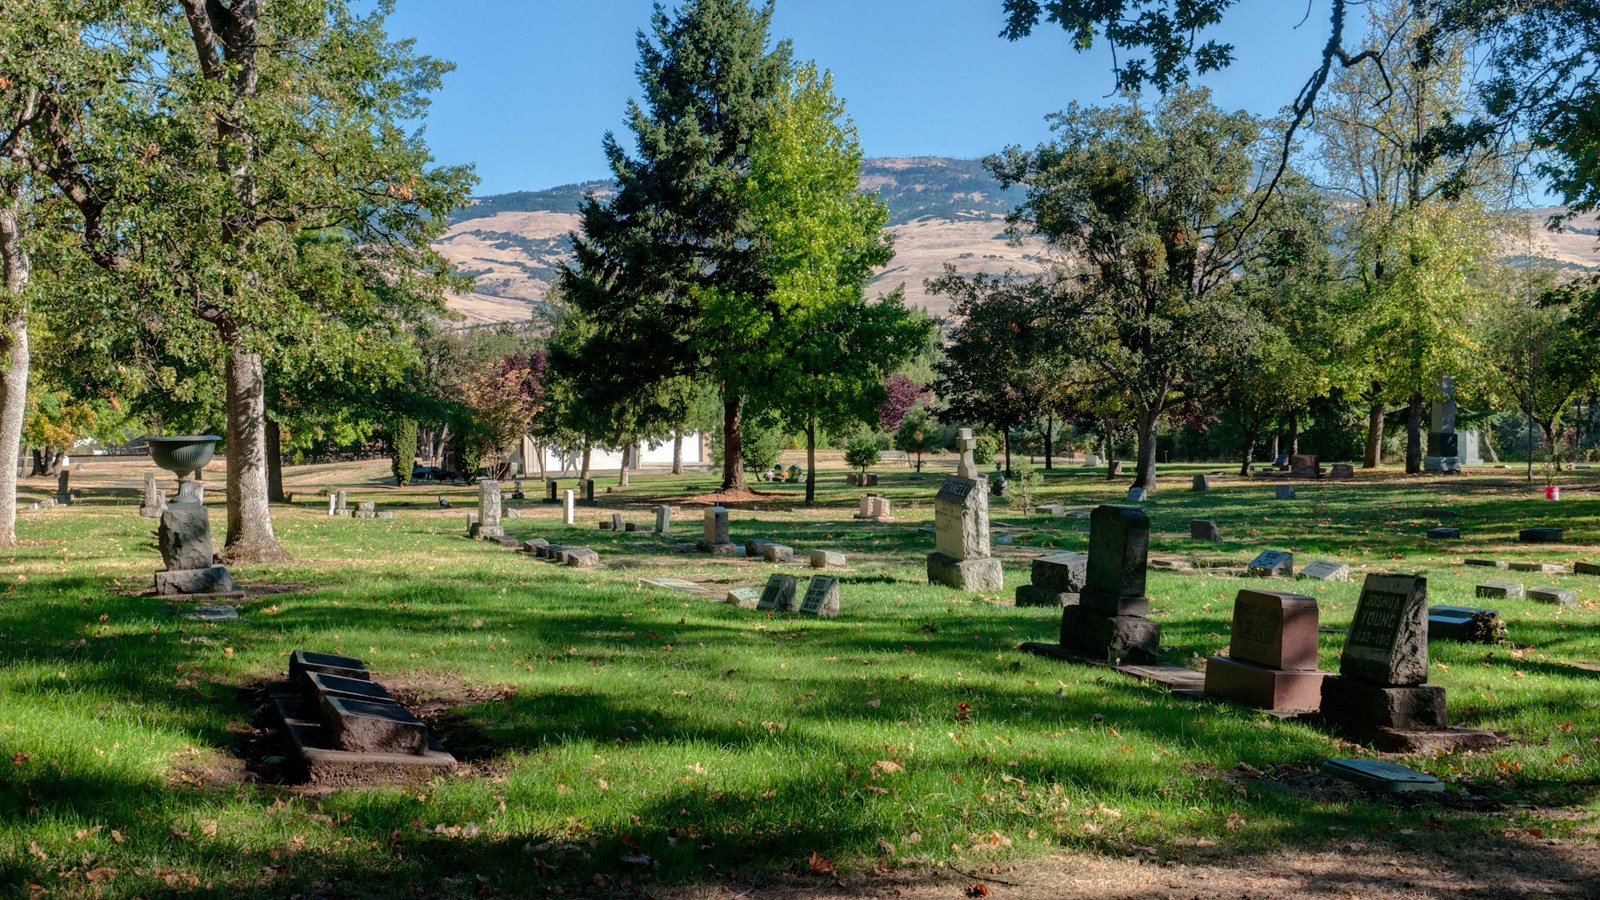 Cemetery with headstones. 